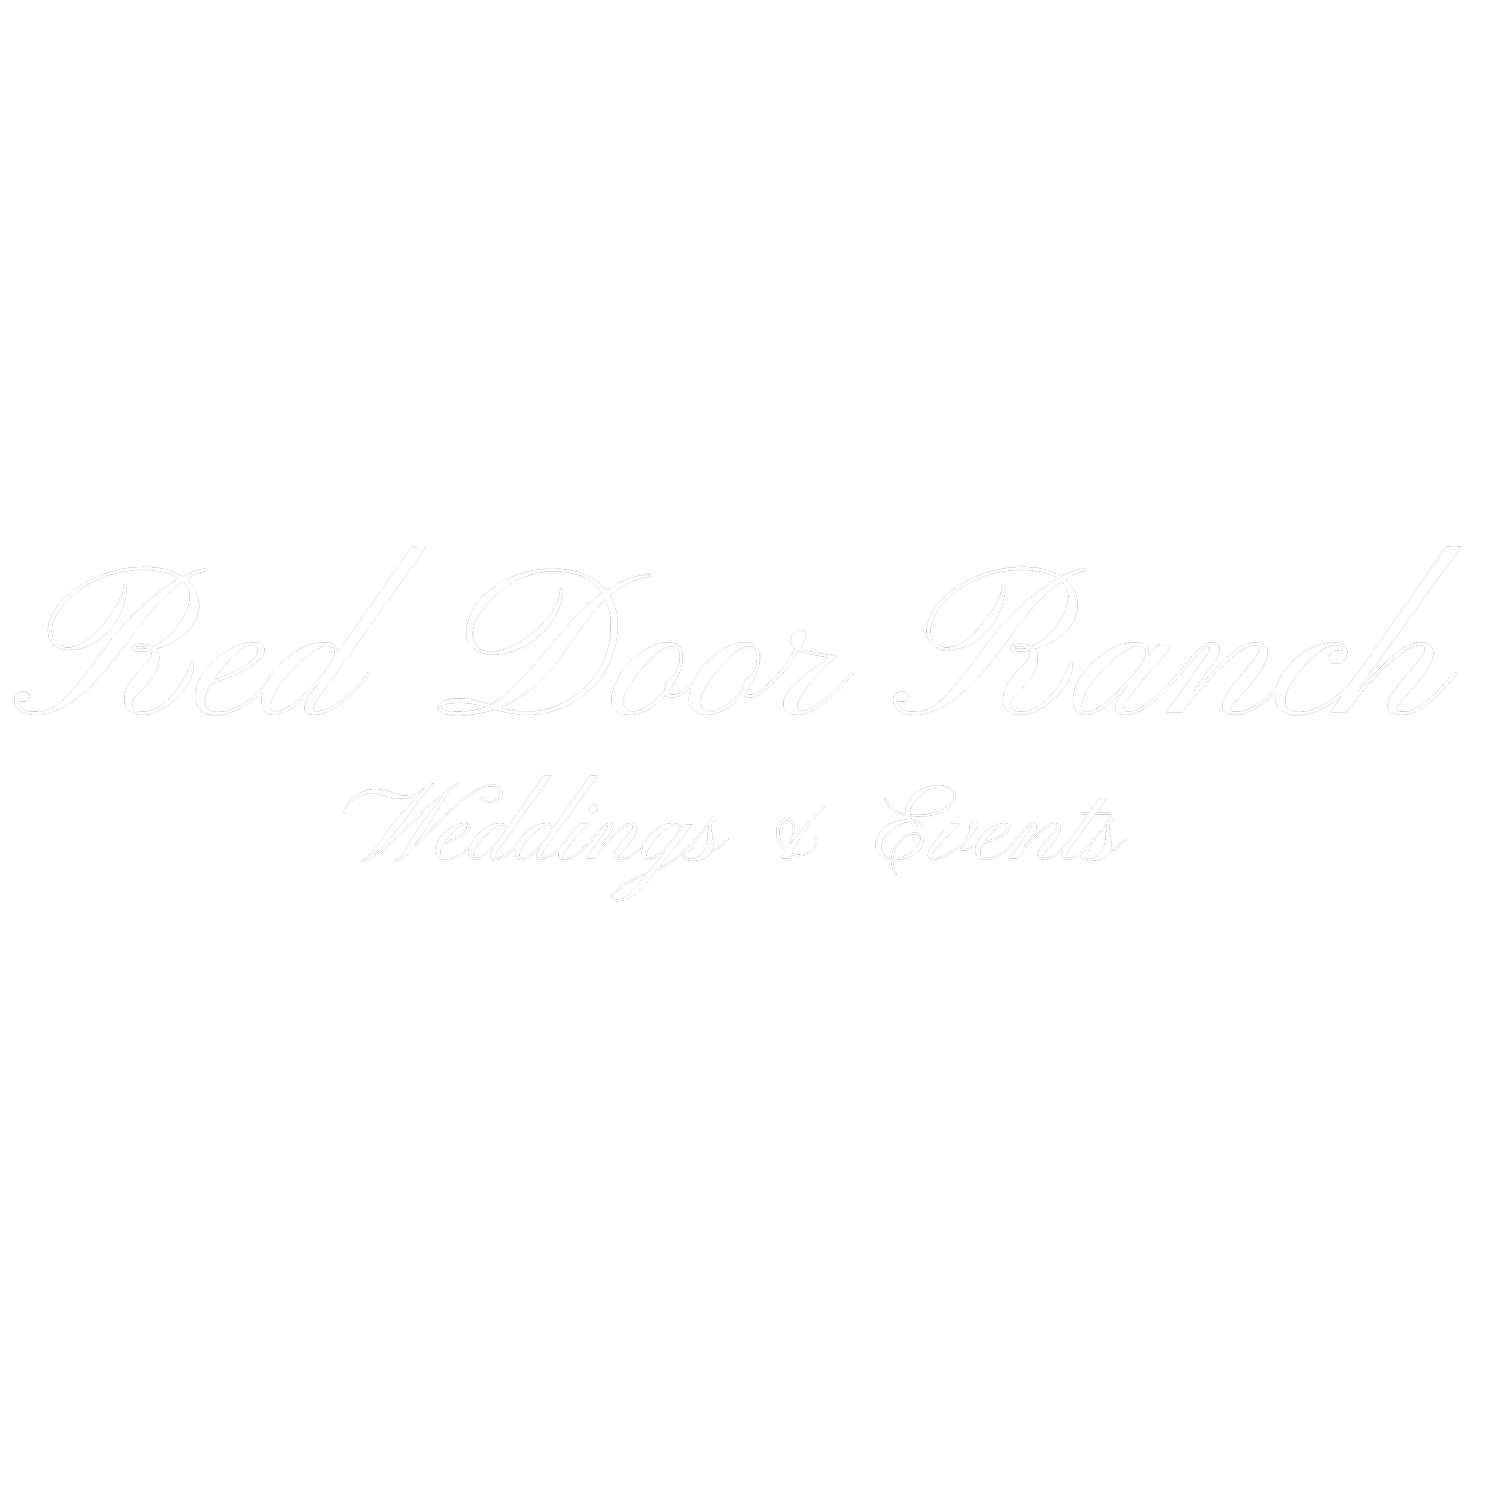 Red Door Ranch